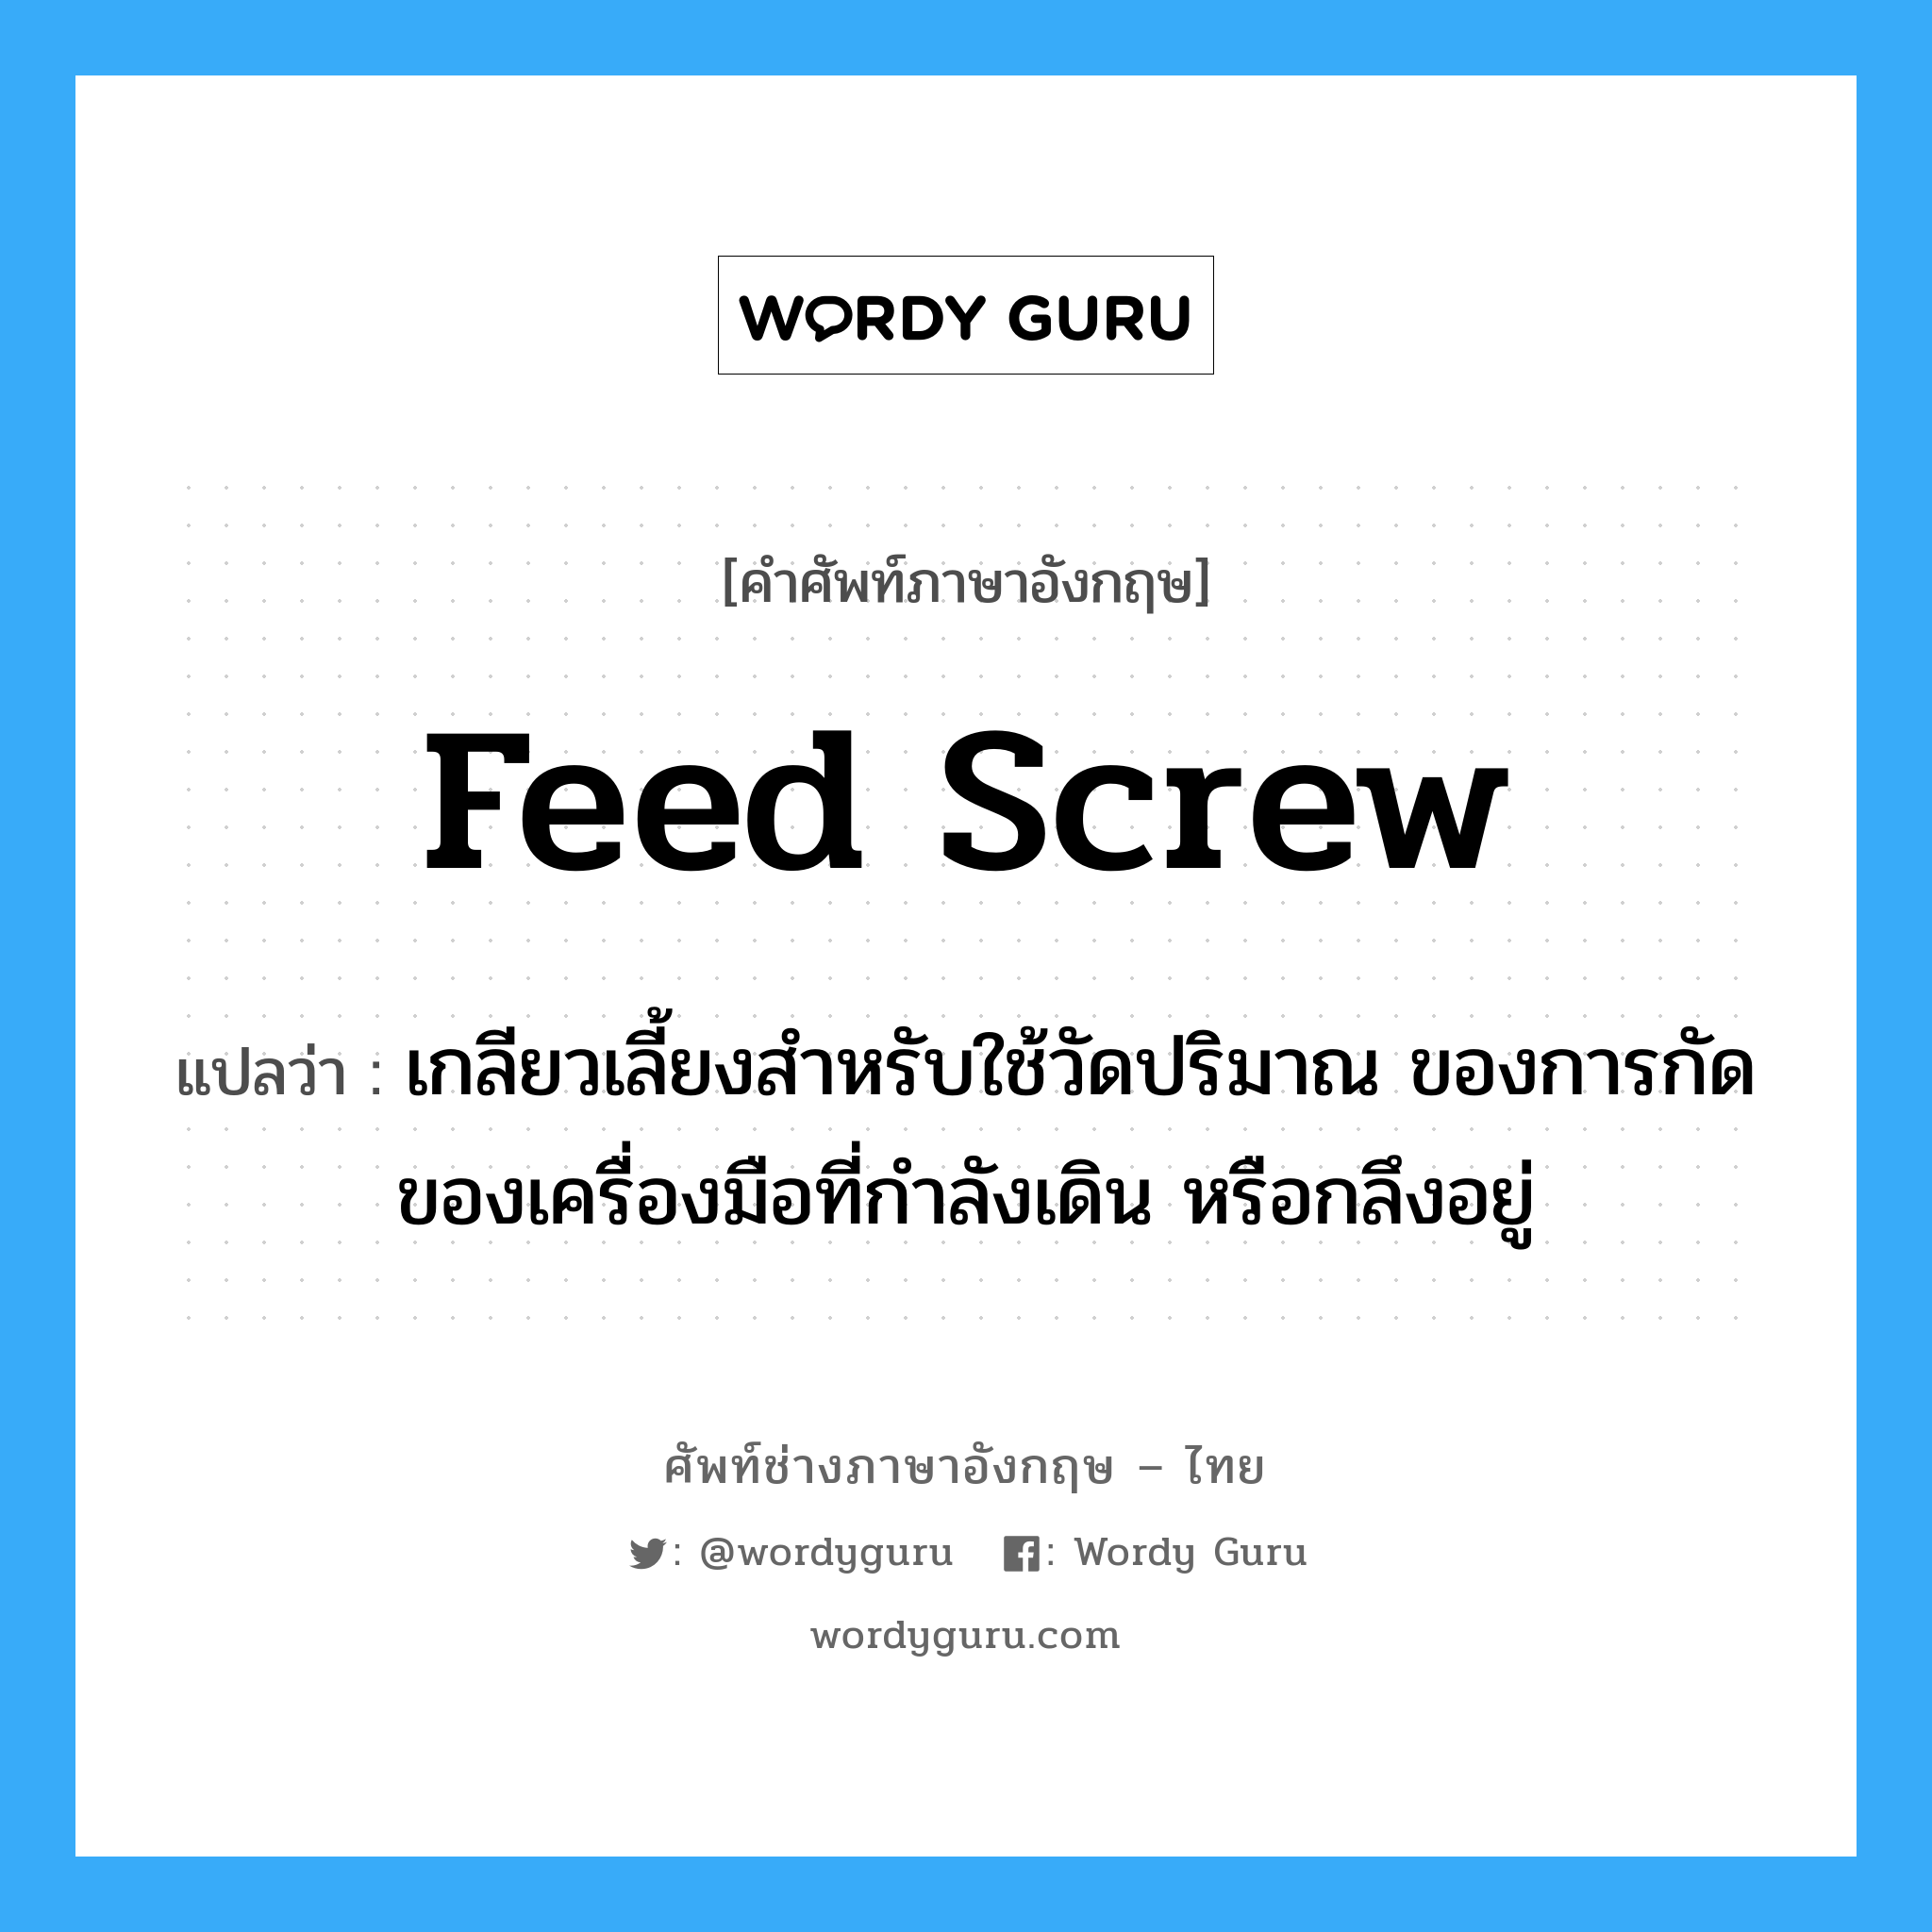 feed screw แปลว่า?, คำศัพท์ช่างภาษาอังกฤษ - ไทย feed screw คำศัพท์ภาษาอังกฤษ feed screw แปลว่า เกลียวเลี้ยงสำหรับใช้วัดปริมาณ ของการกัดของเครื่องมือที่กำลังเดิน หรือกลึงอยู่